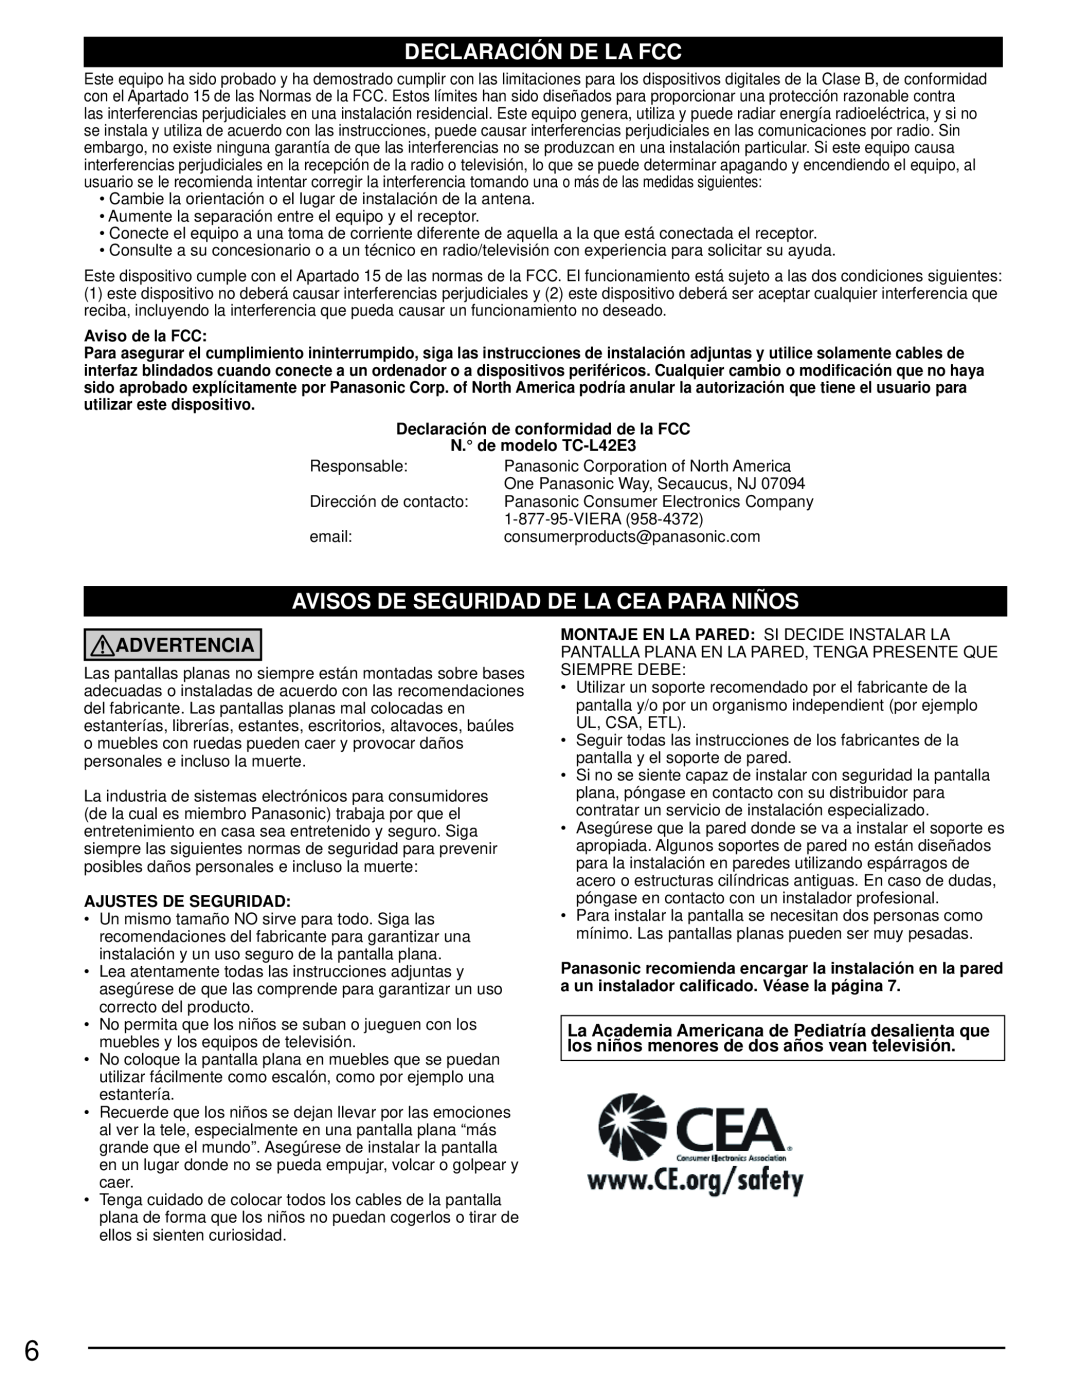 Panasonic TC-L42E3 owner manual Declaración De La Fcc, Avisos De Seguridad De La Cea Para Niños, Advertencia 